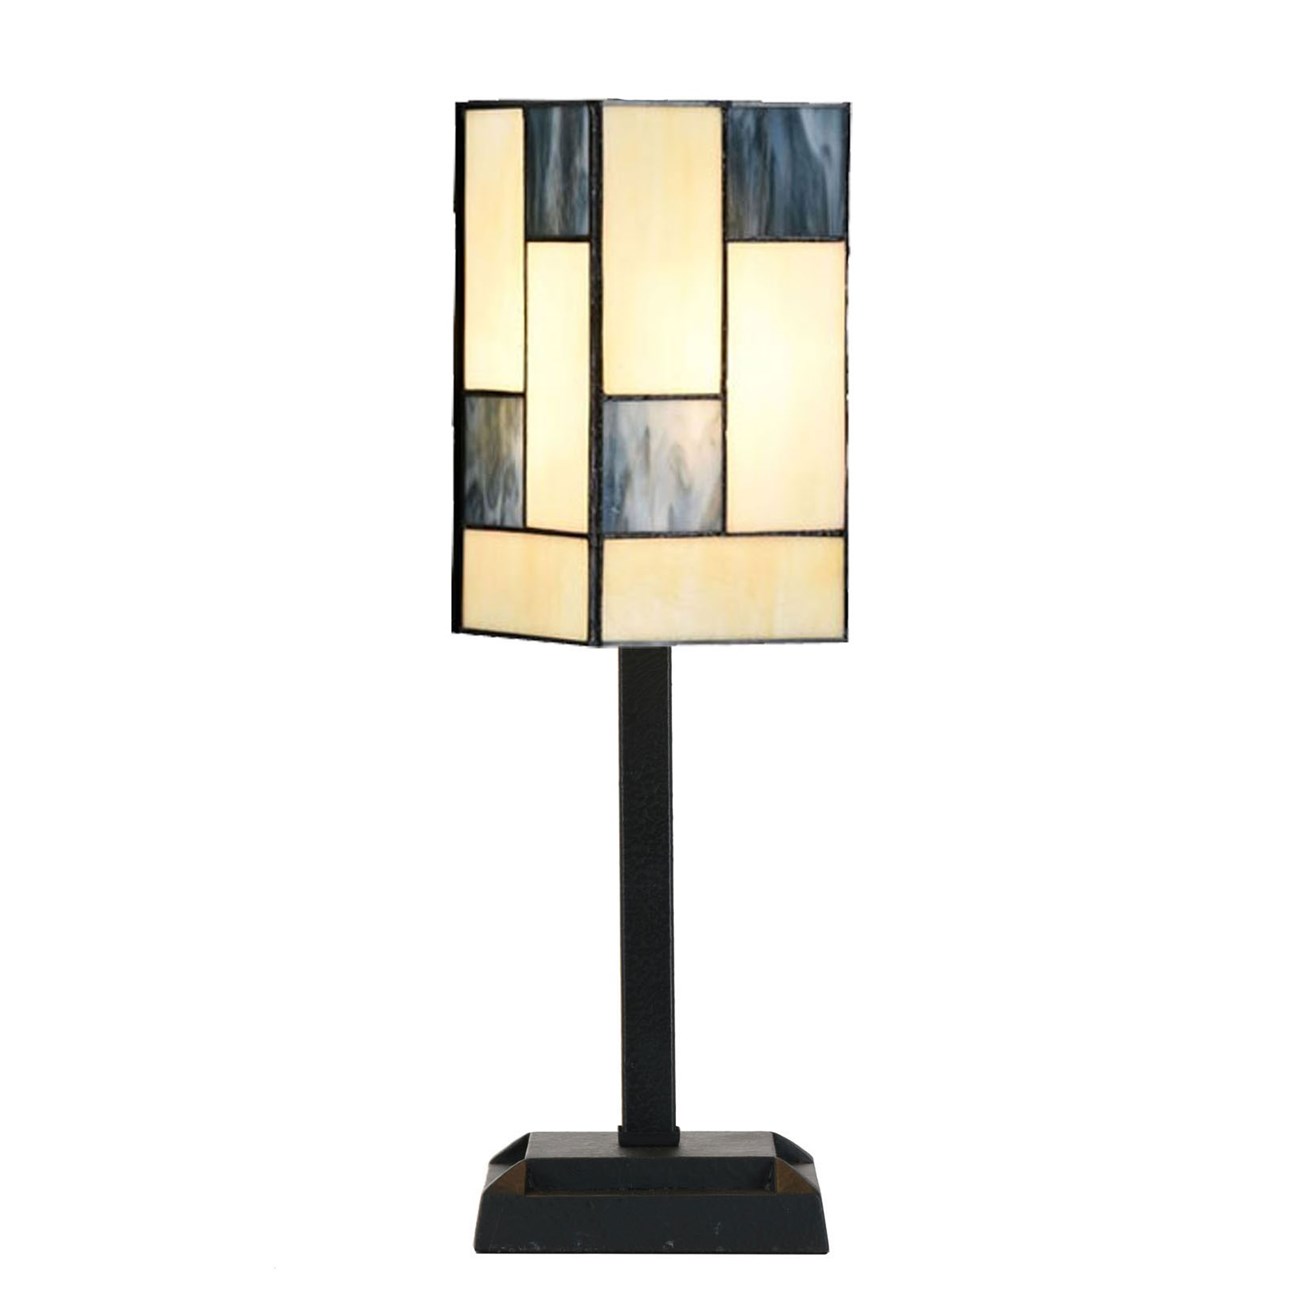 Art Dec Tiffany Tafellampje Mondriaan op voet frontaal aanzicht